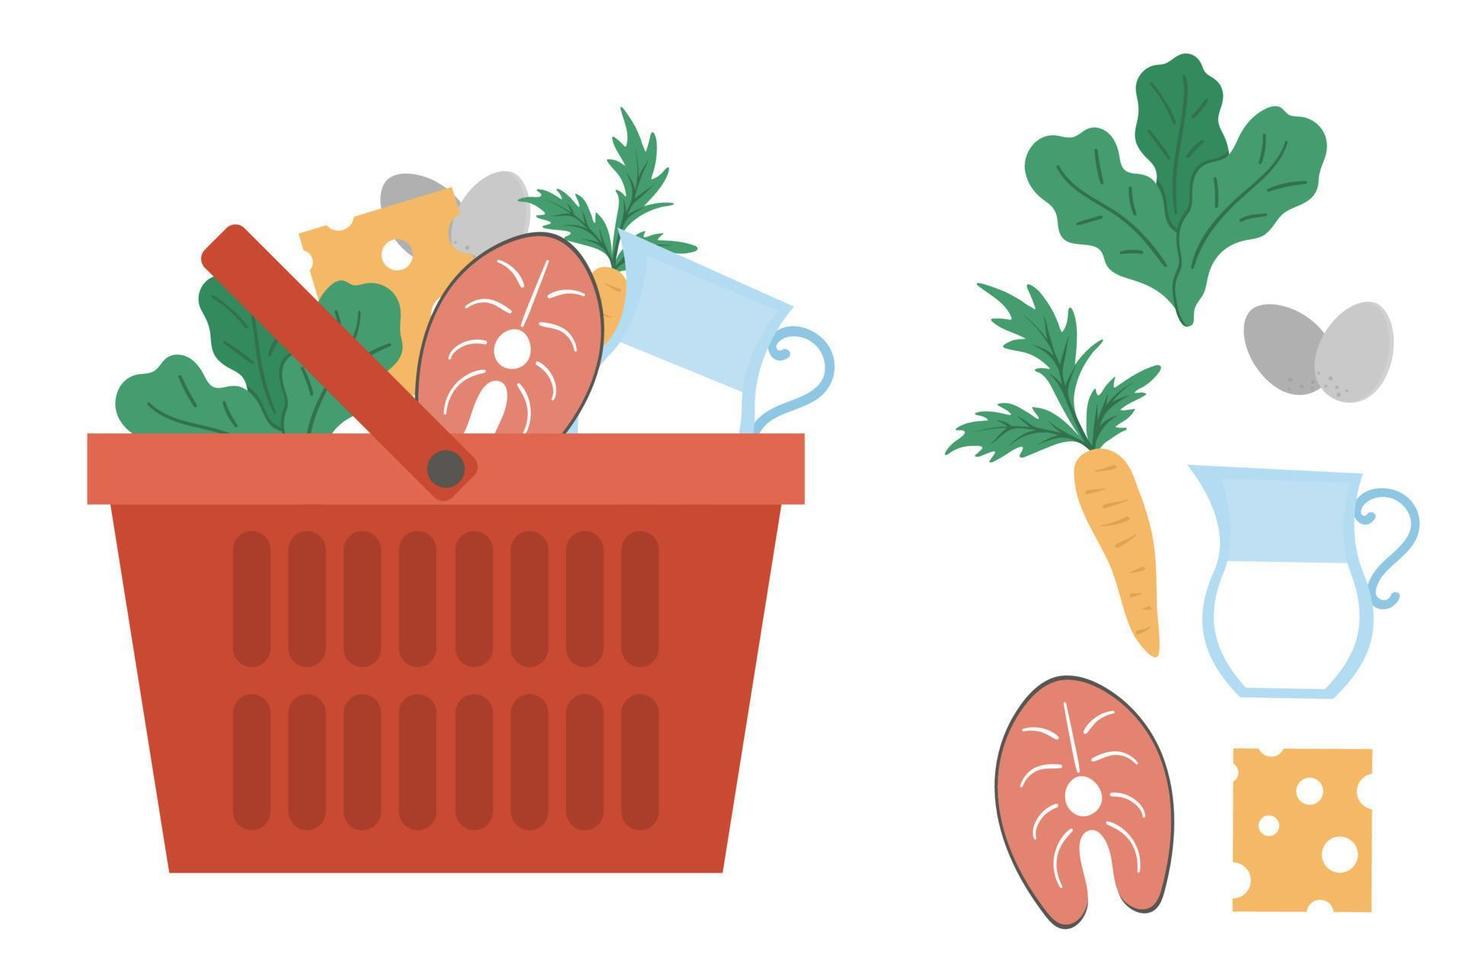 vektor röd varukorg med produkter ikonen isolerad på vit bakgrund. plastbutiksvagn med grönsaker, fisk, mejeriprodukter. hälsosam mat illustration